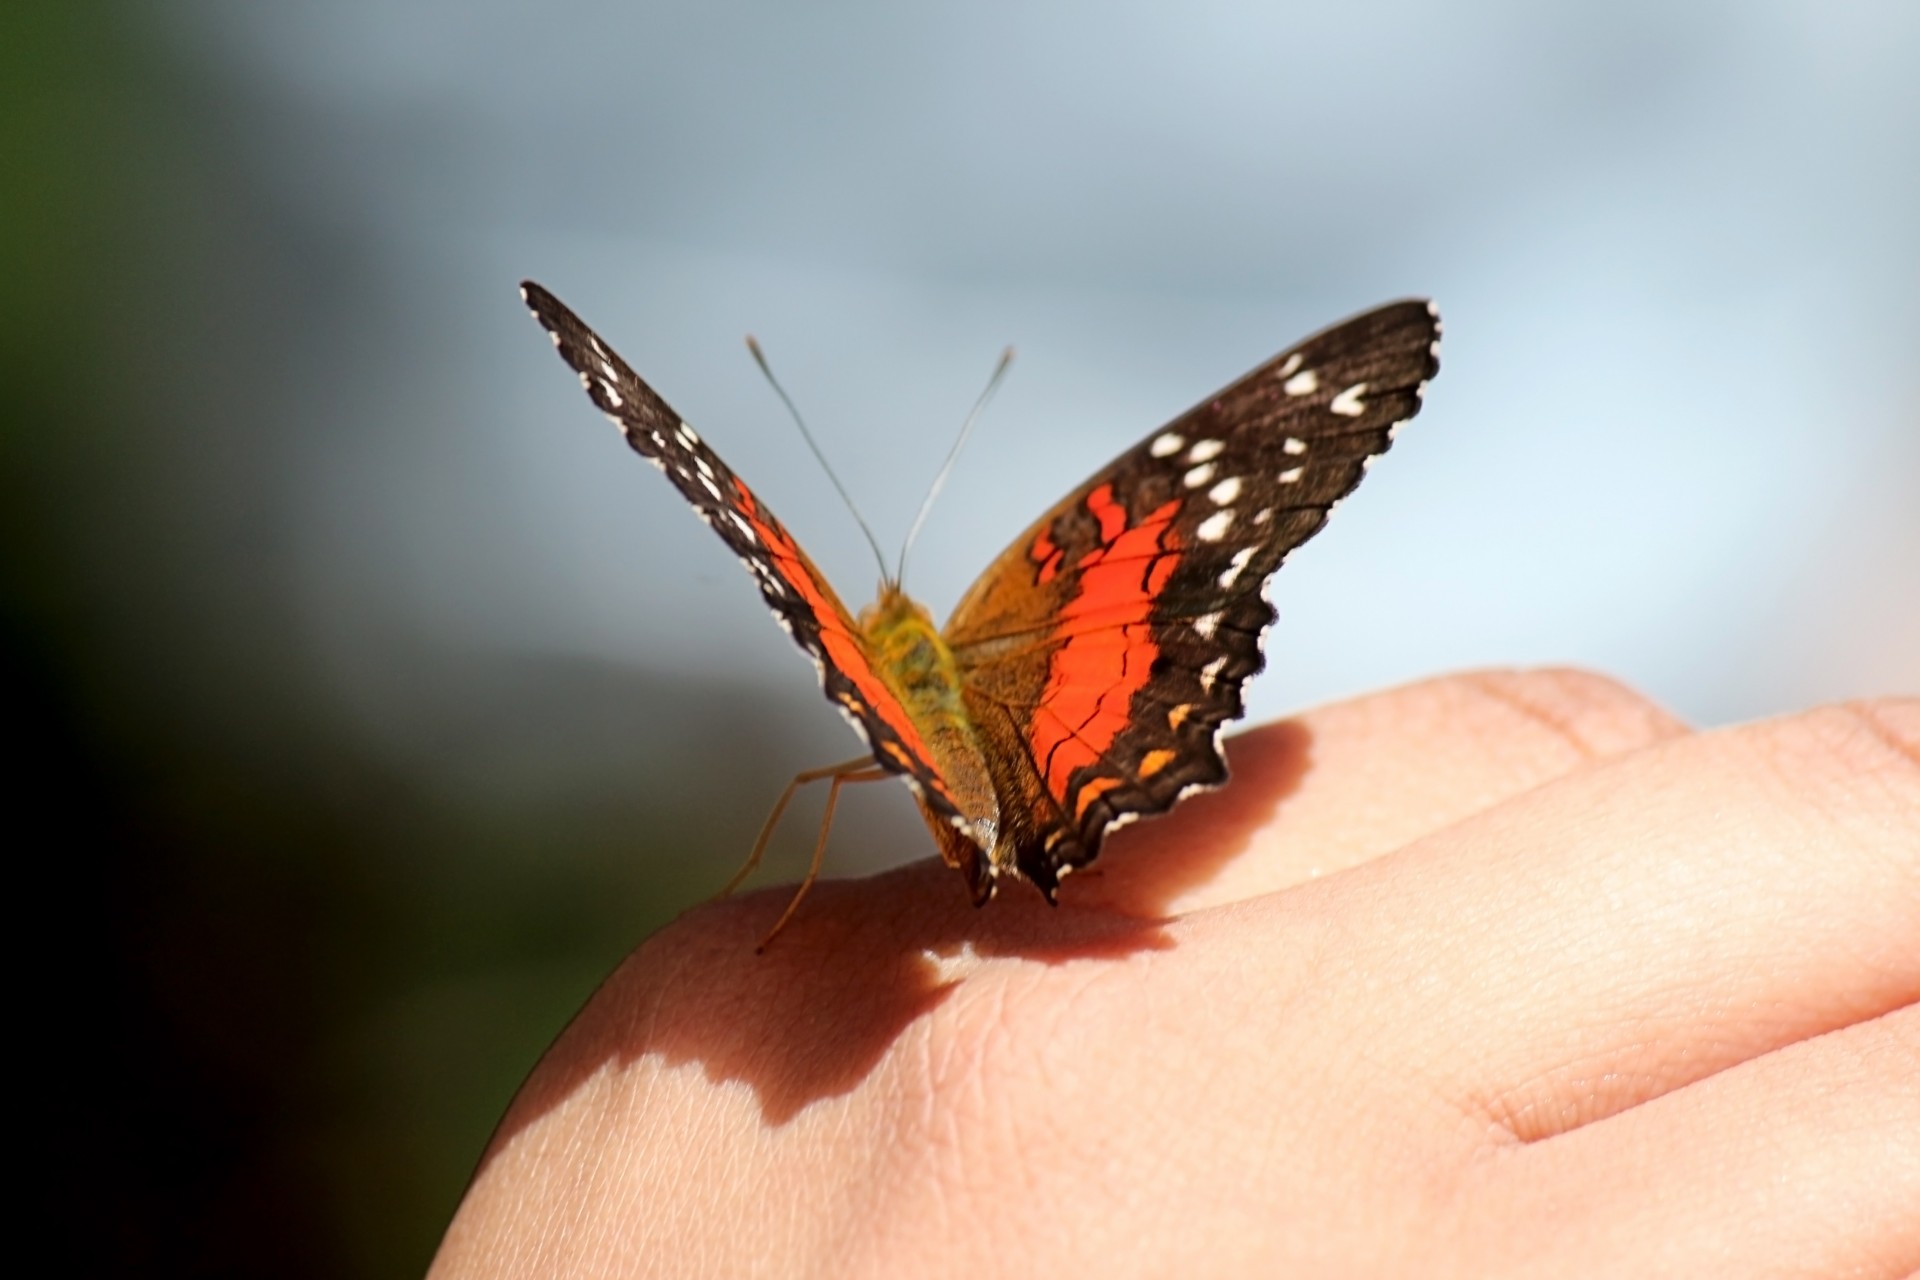 Schmetterling auf der Hand Kostenloses Stock Bild - Public Domain Pictures